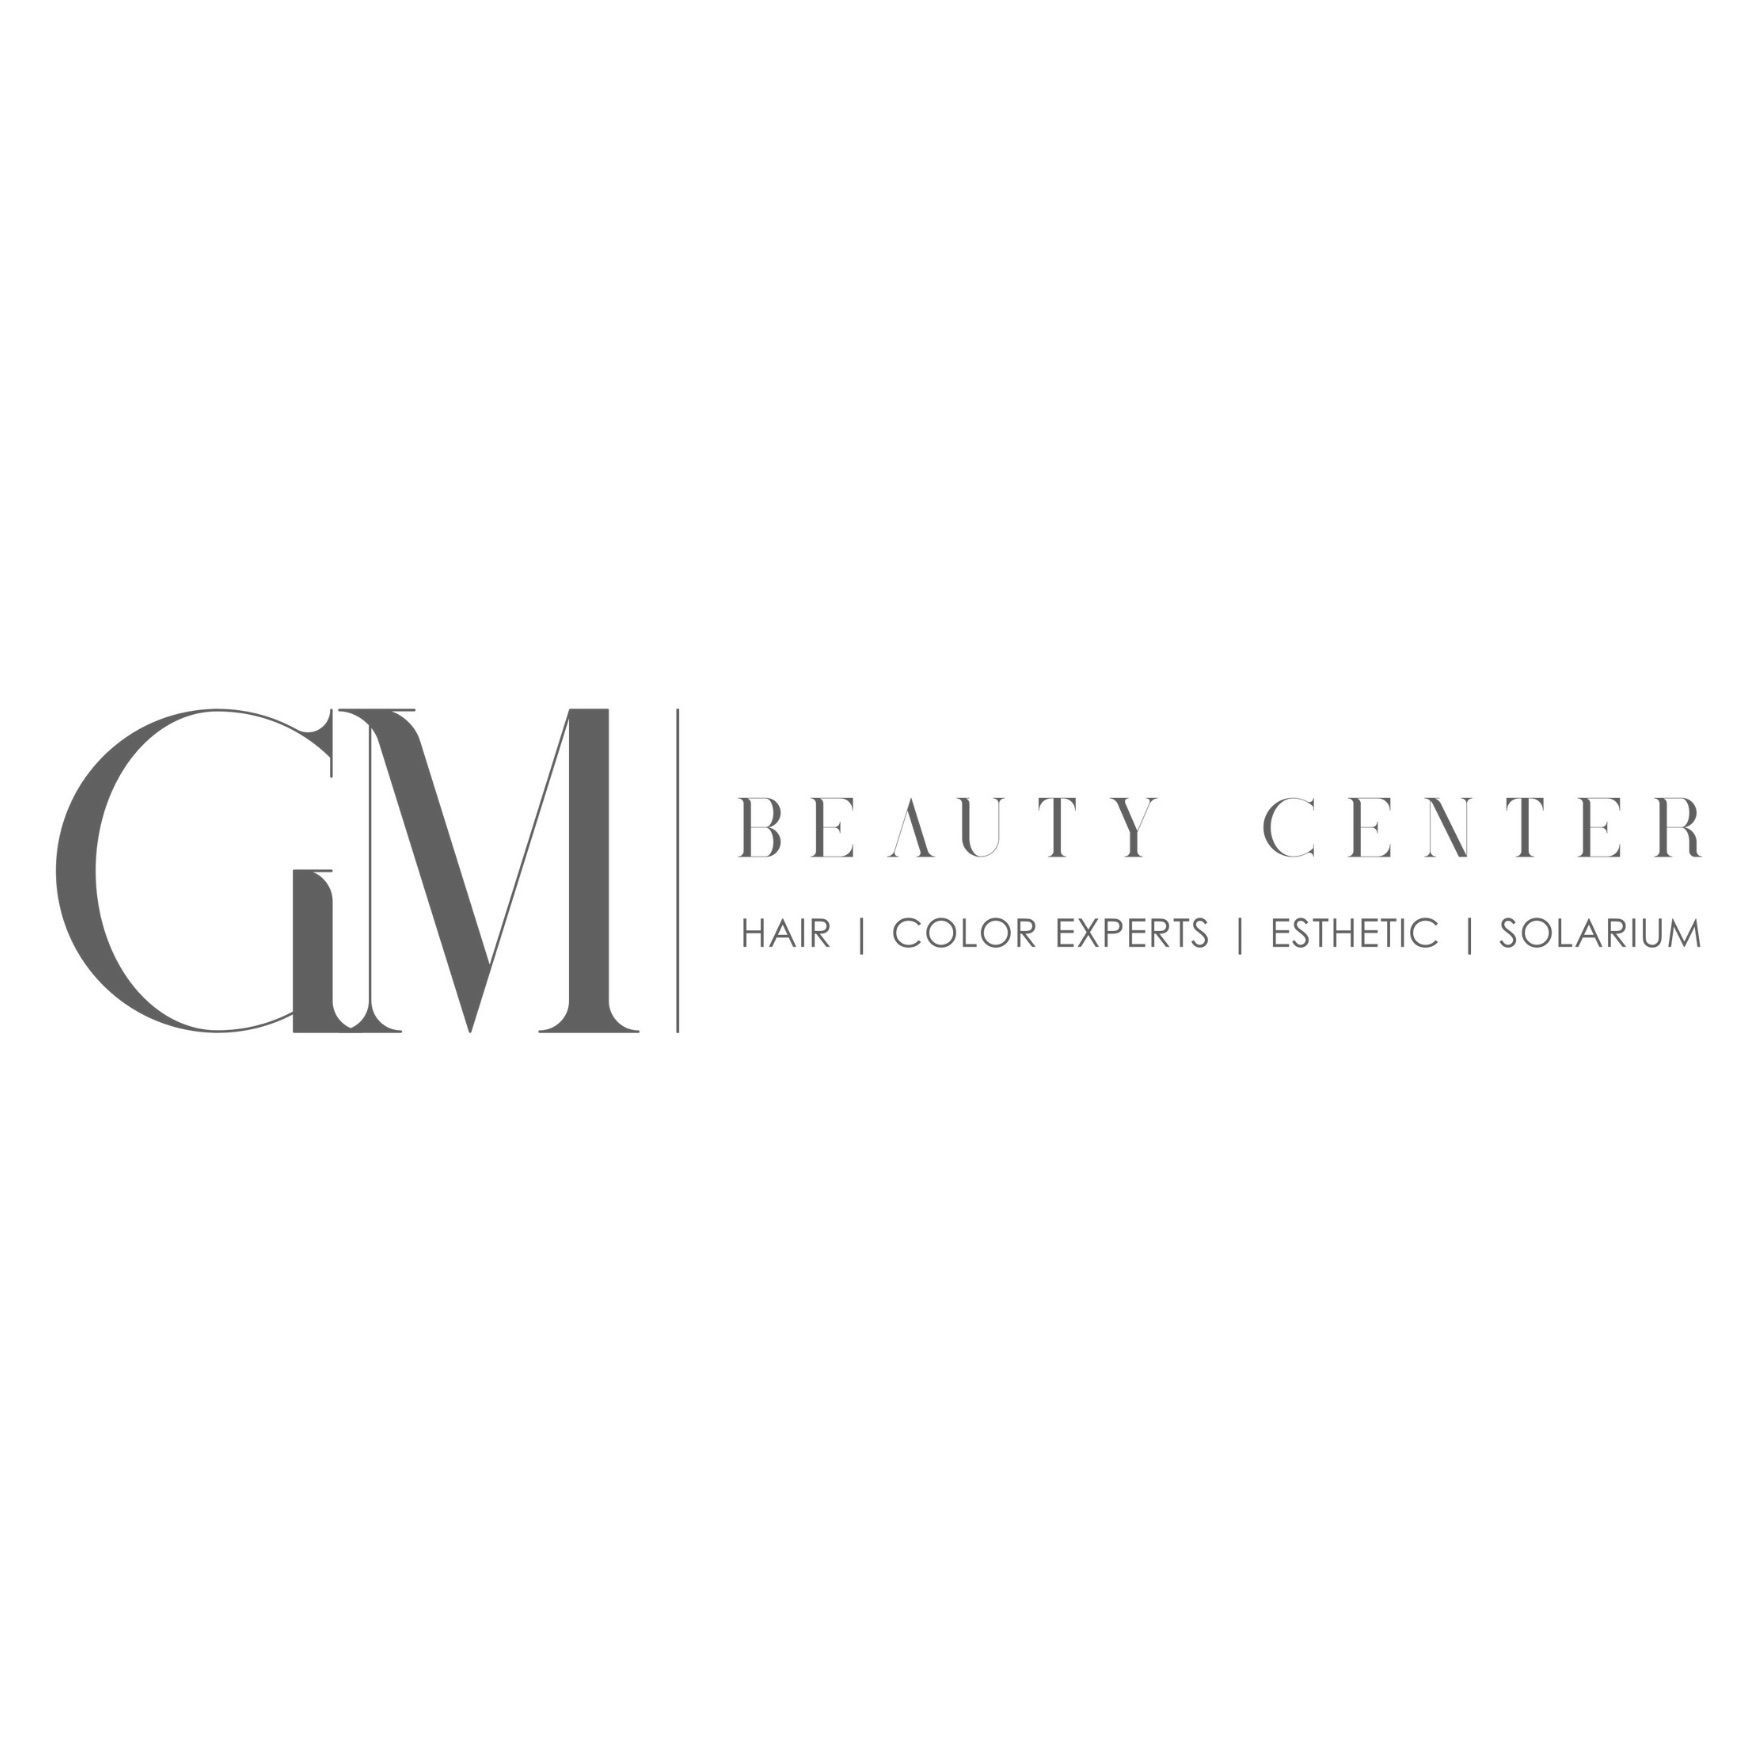 Gm Beauty Center Sevilla | Peluquería expertos en color & Estética., Carretera de carmona, 29, 41008, Sevilla